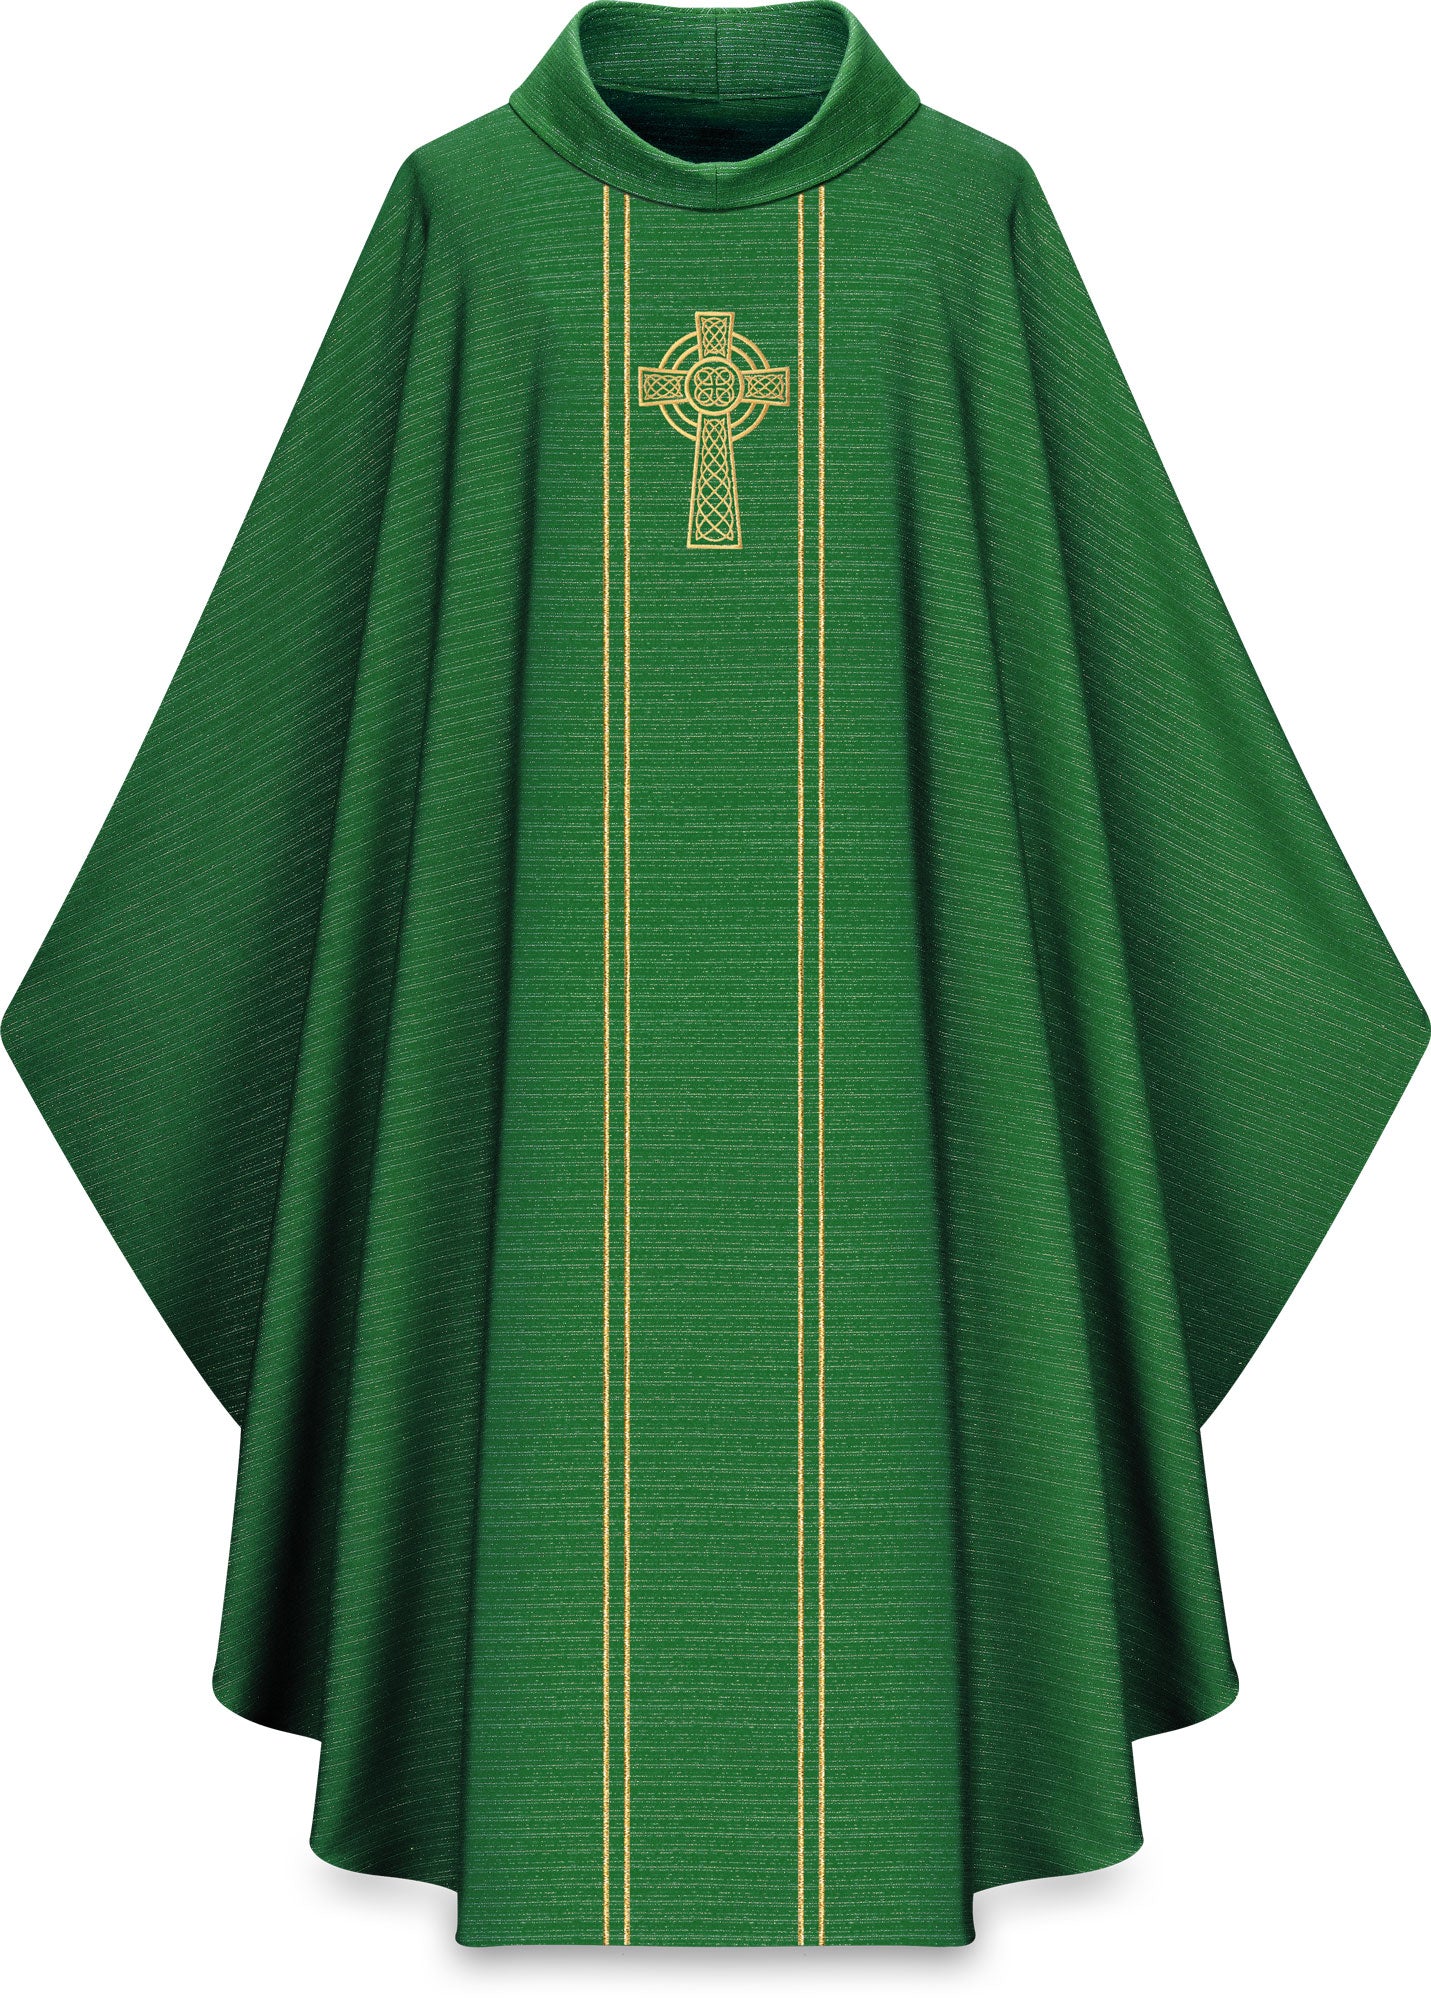 chasuble-celtic-cross-green-5195.jpg